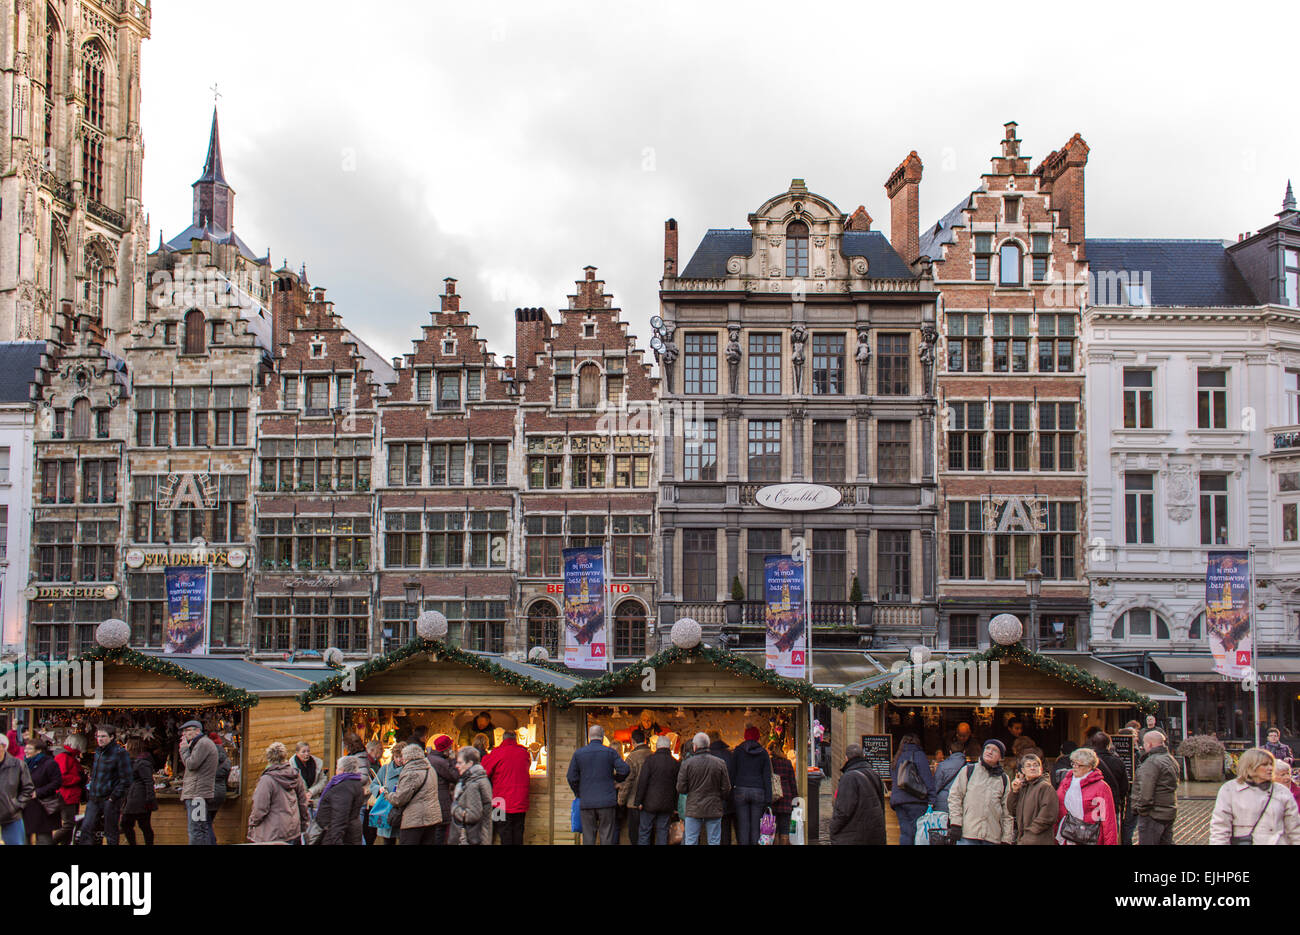 Mercatino di Natale in piazza principale, Anversa, Belgio Foto Stock